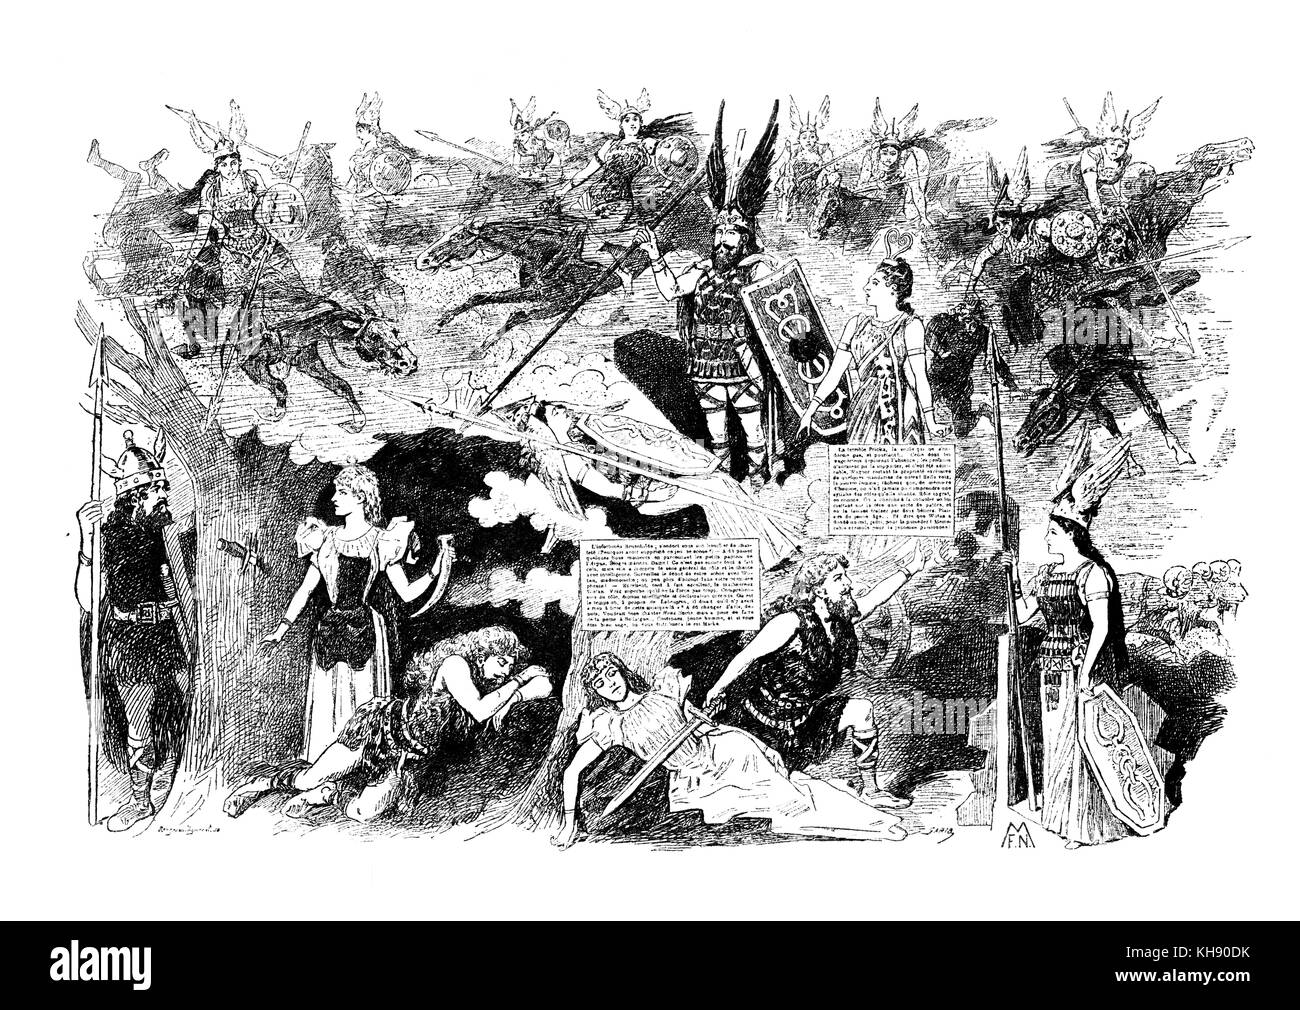 Die Walküre (La Valquiria), por Wagner ( segundo de cuatro óperas en Der Ring des Nibelungen ciclo) caricatura del Diario satírico francés La vie Parisienne el 20 de mayo de 1893. Título reza: "Wal-ki-dor et Wal-ky-Rie". Autor y compositor alemán, el 22 de mayo de 1813 - 13 de febrero de 1883. Foto de stock